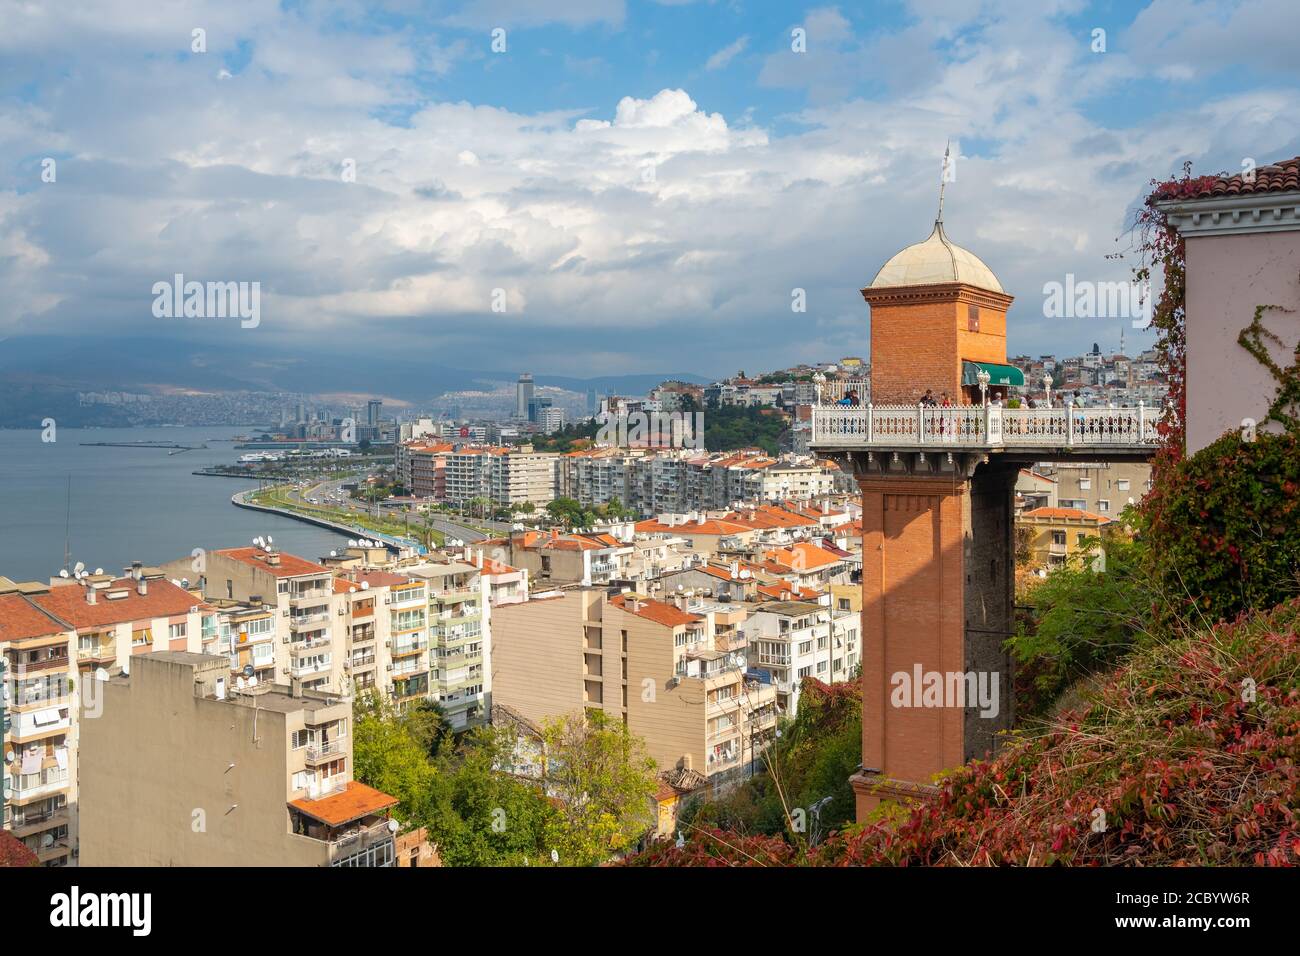 El ascensor histórico en el distrito Konak de Izmir, Turquía Foto de stock